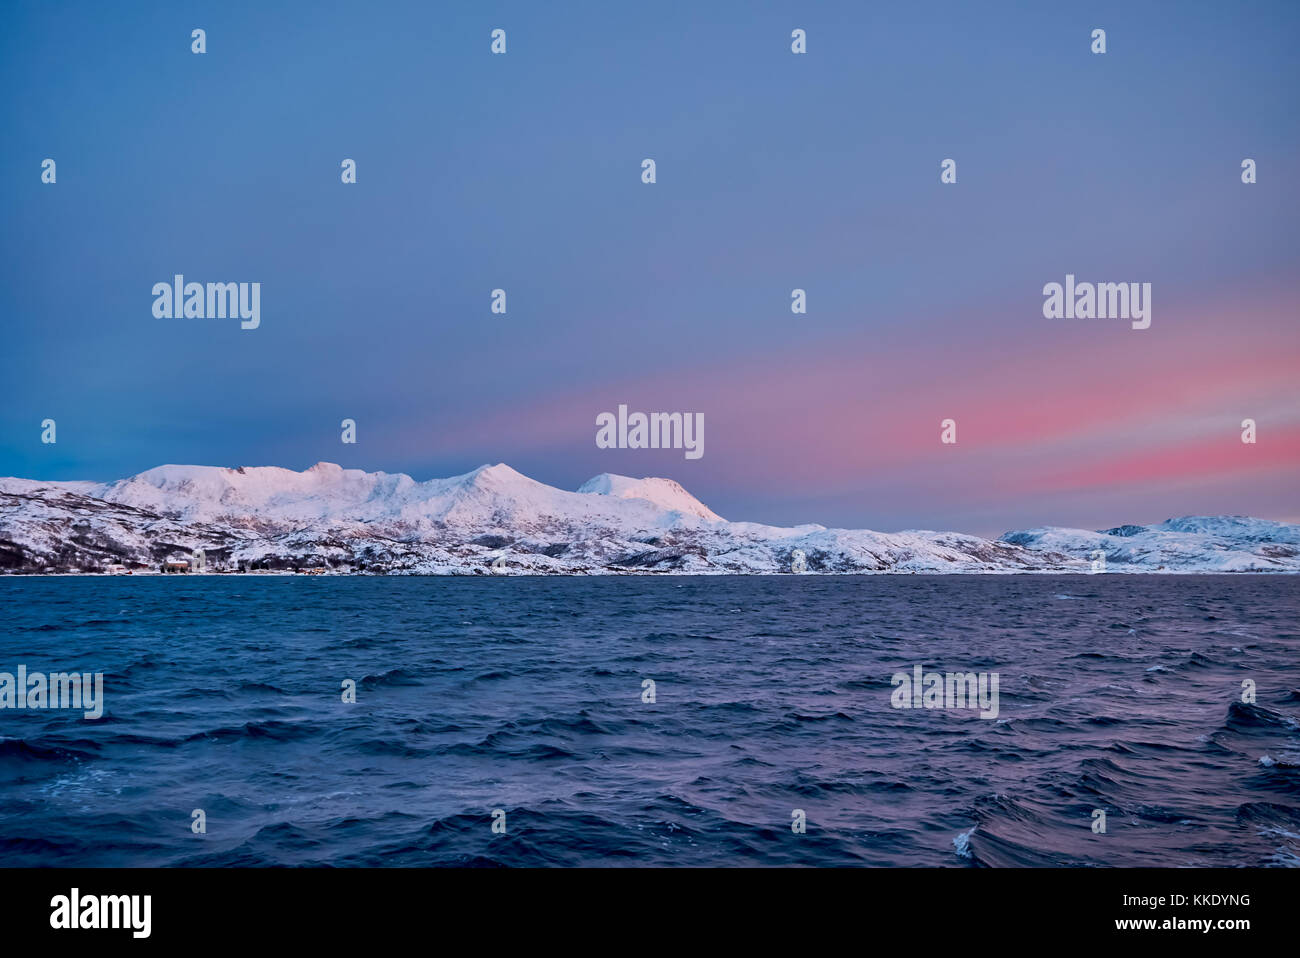 Alba sul fiordo con montagne coperte di neve e paesaggio invernale visto da sailship vicino a Tromso, Troms, Norvegia, Europa Foto Stock